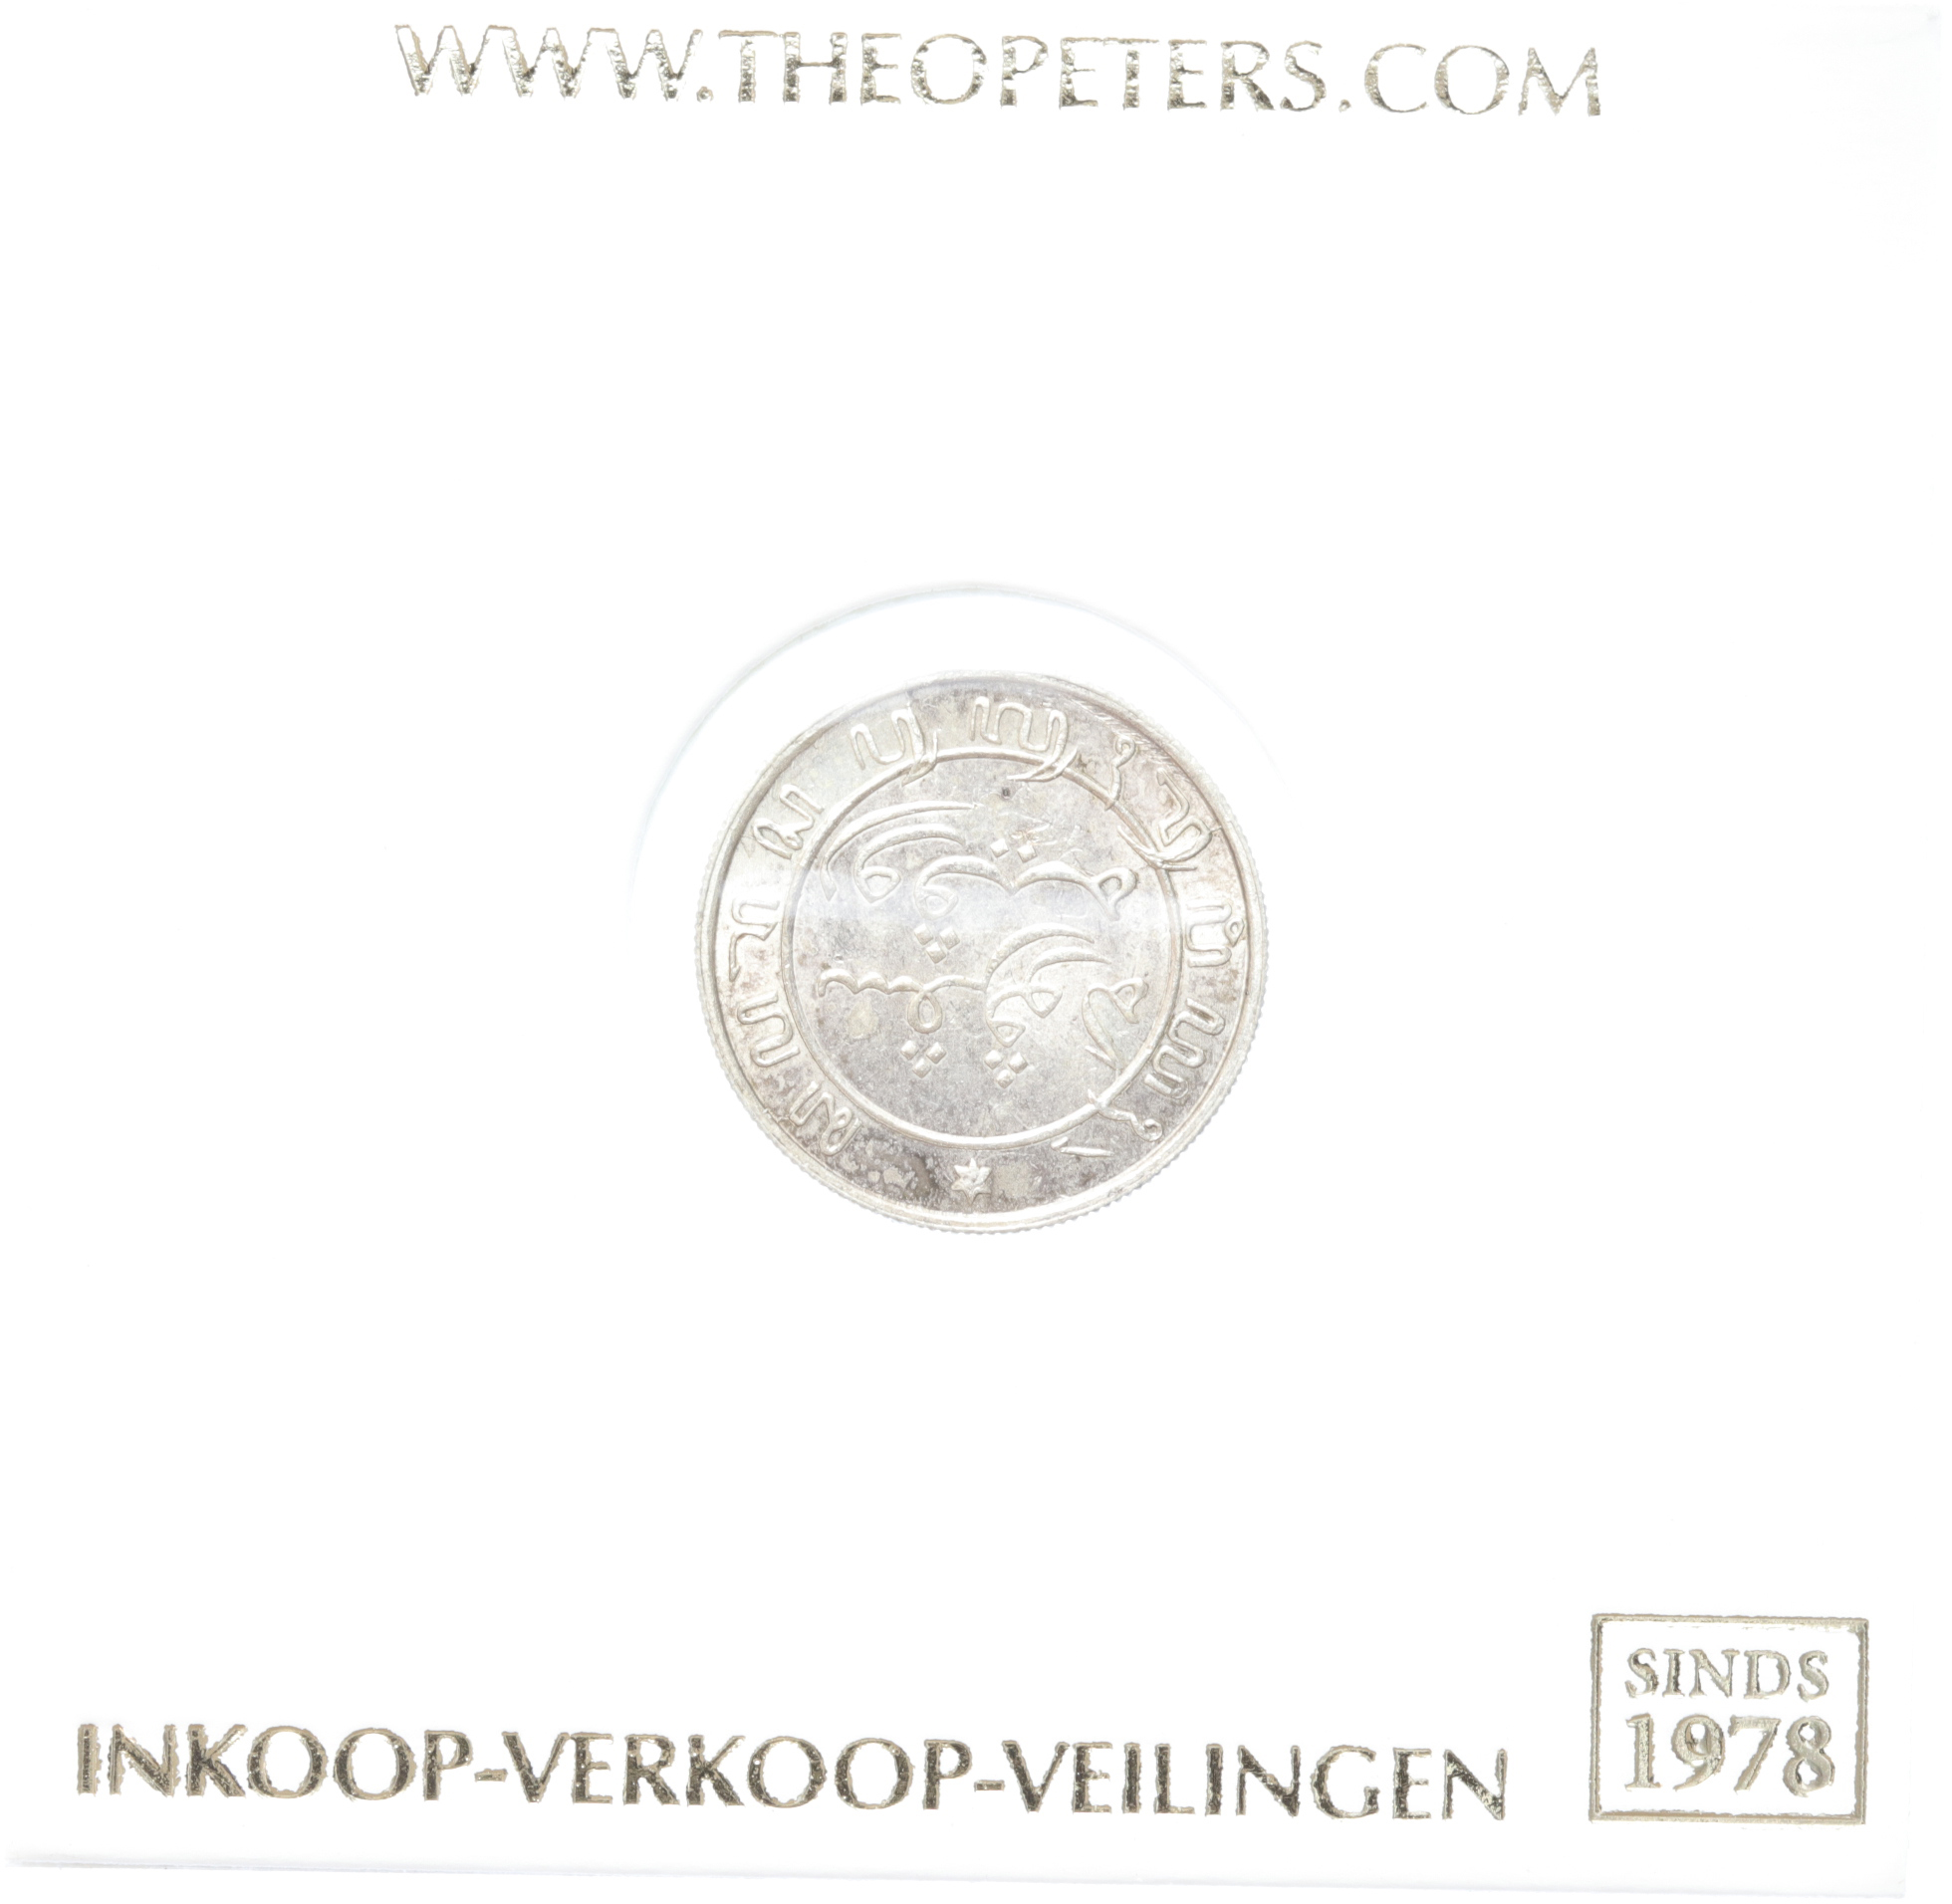 Nederlands Indië 1/10 gulden 1900 fdc